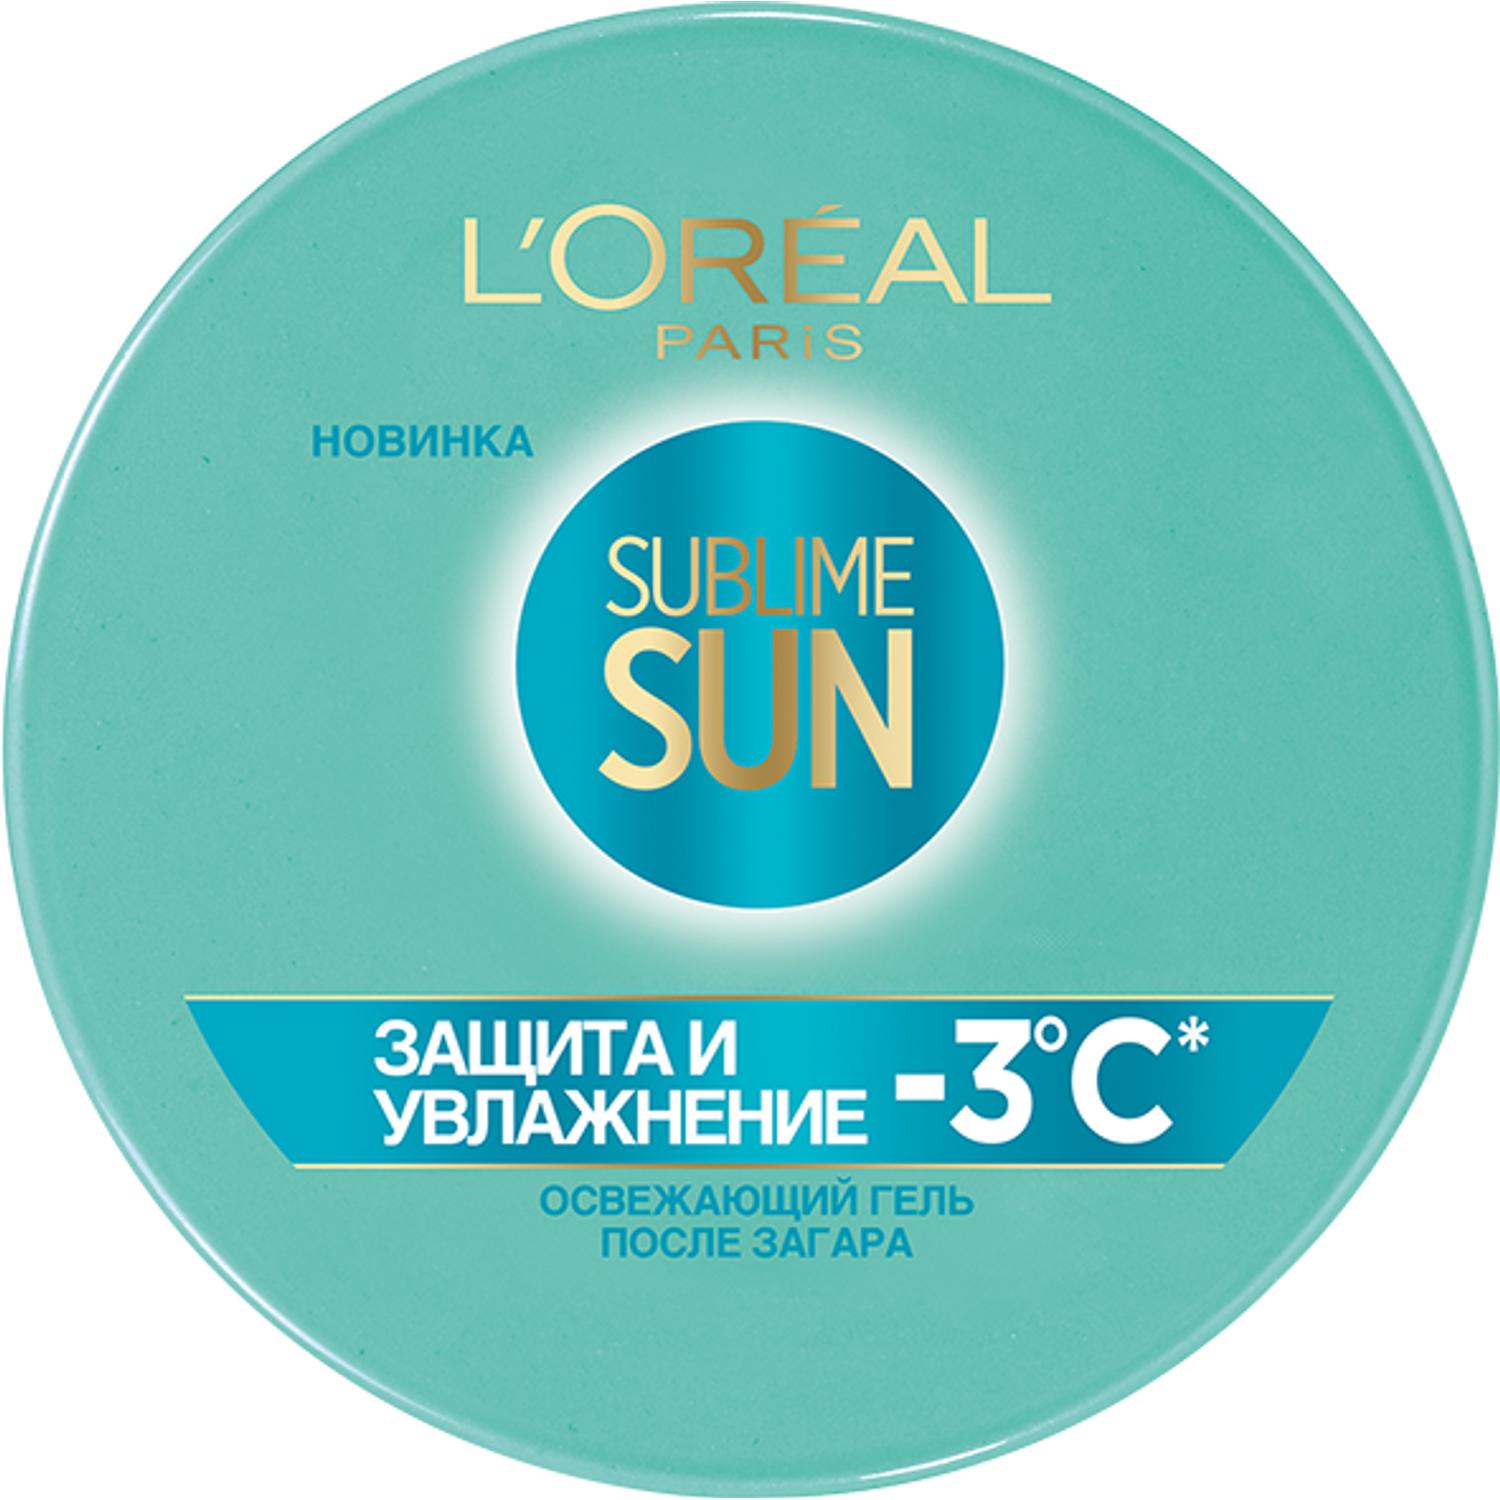 фото Освежающий гель после загара для лица и тела l'oreal paris sublime sun защита и увлажнение 150 мл l'oréal paris